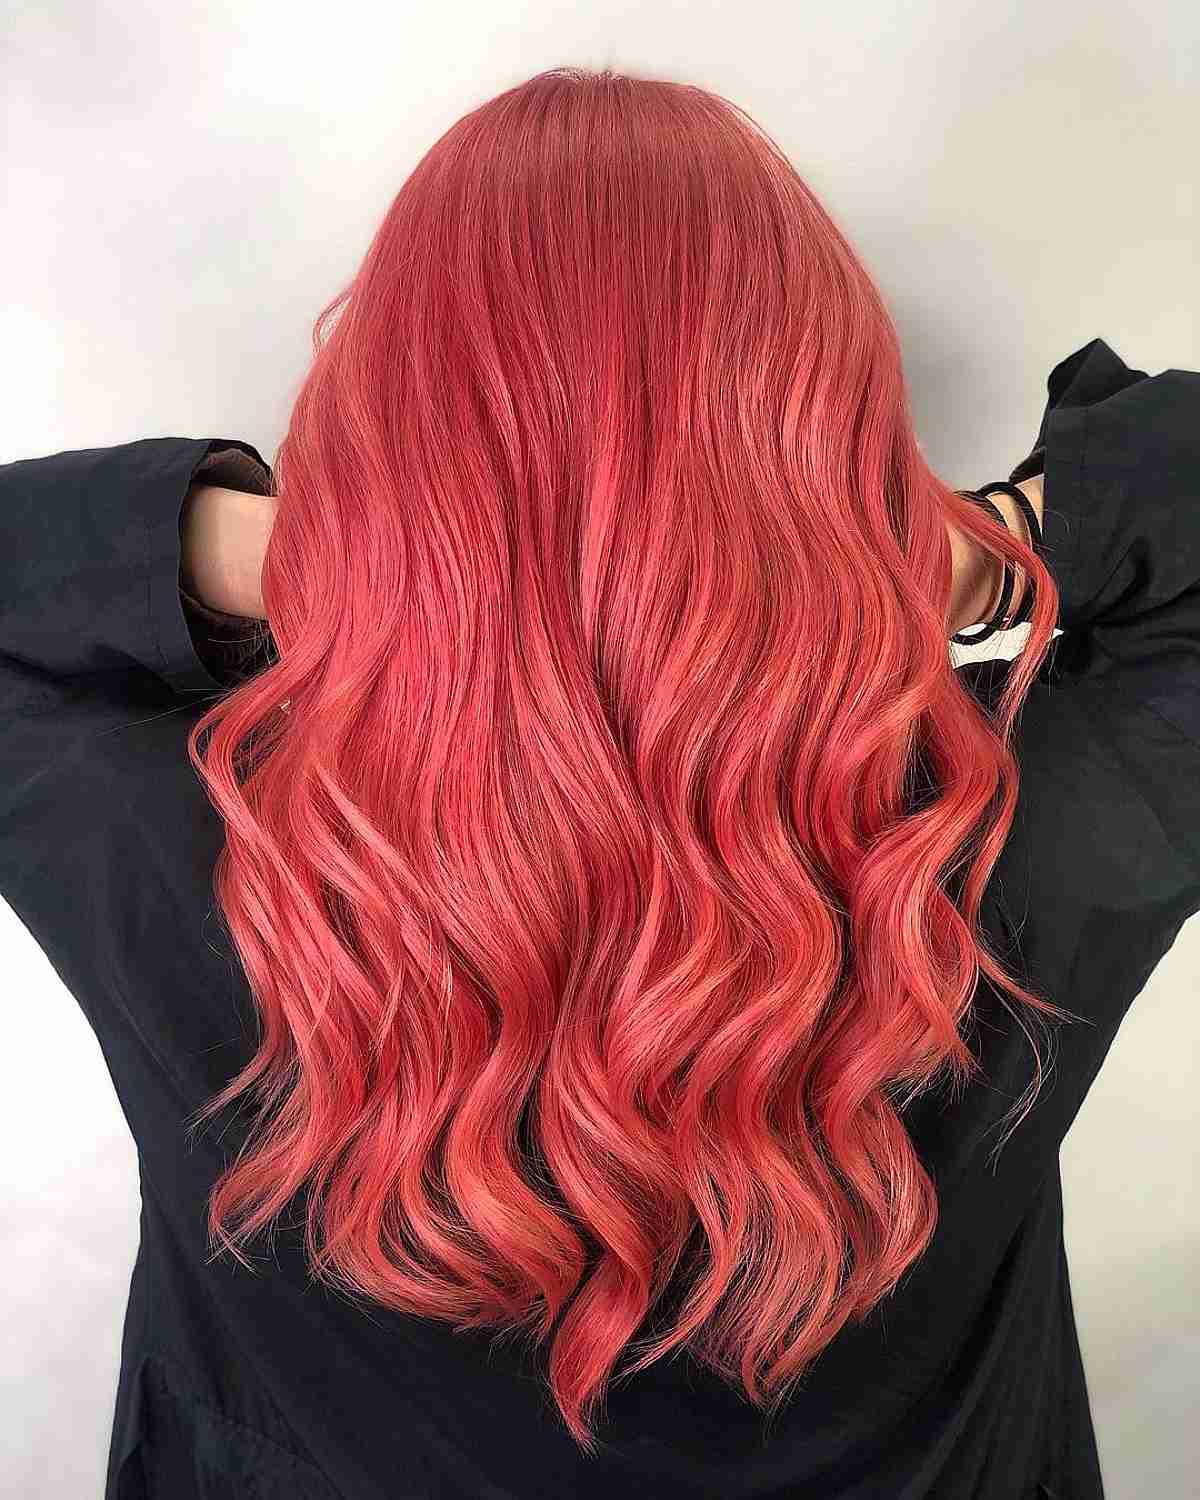 Penteado colorido em tons de rosa coral